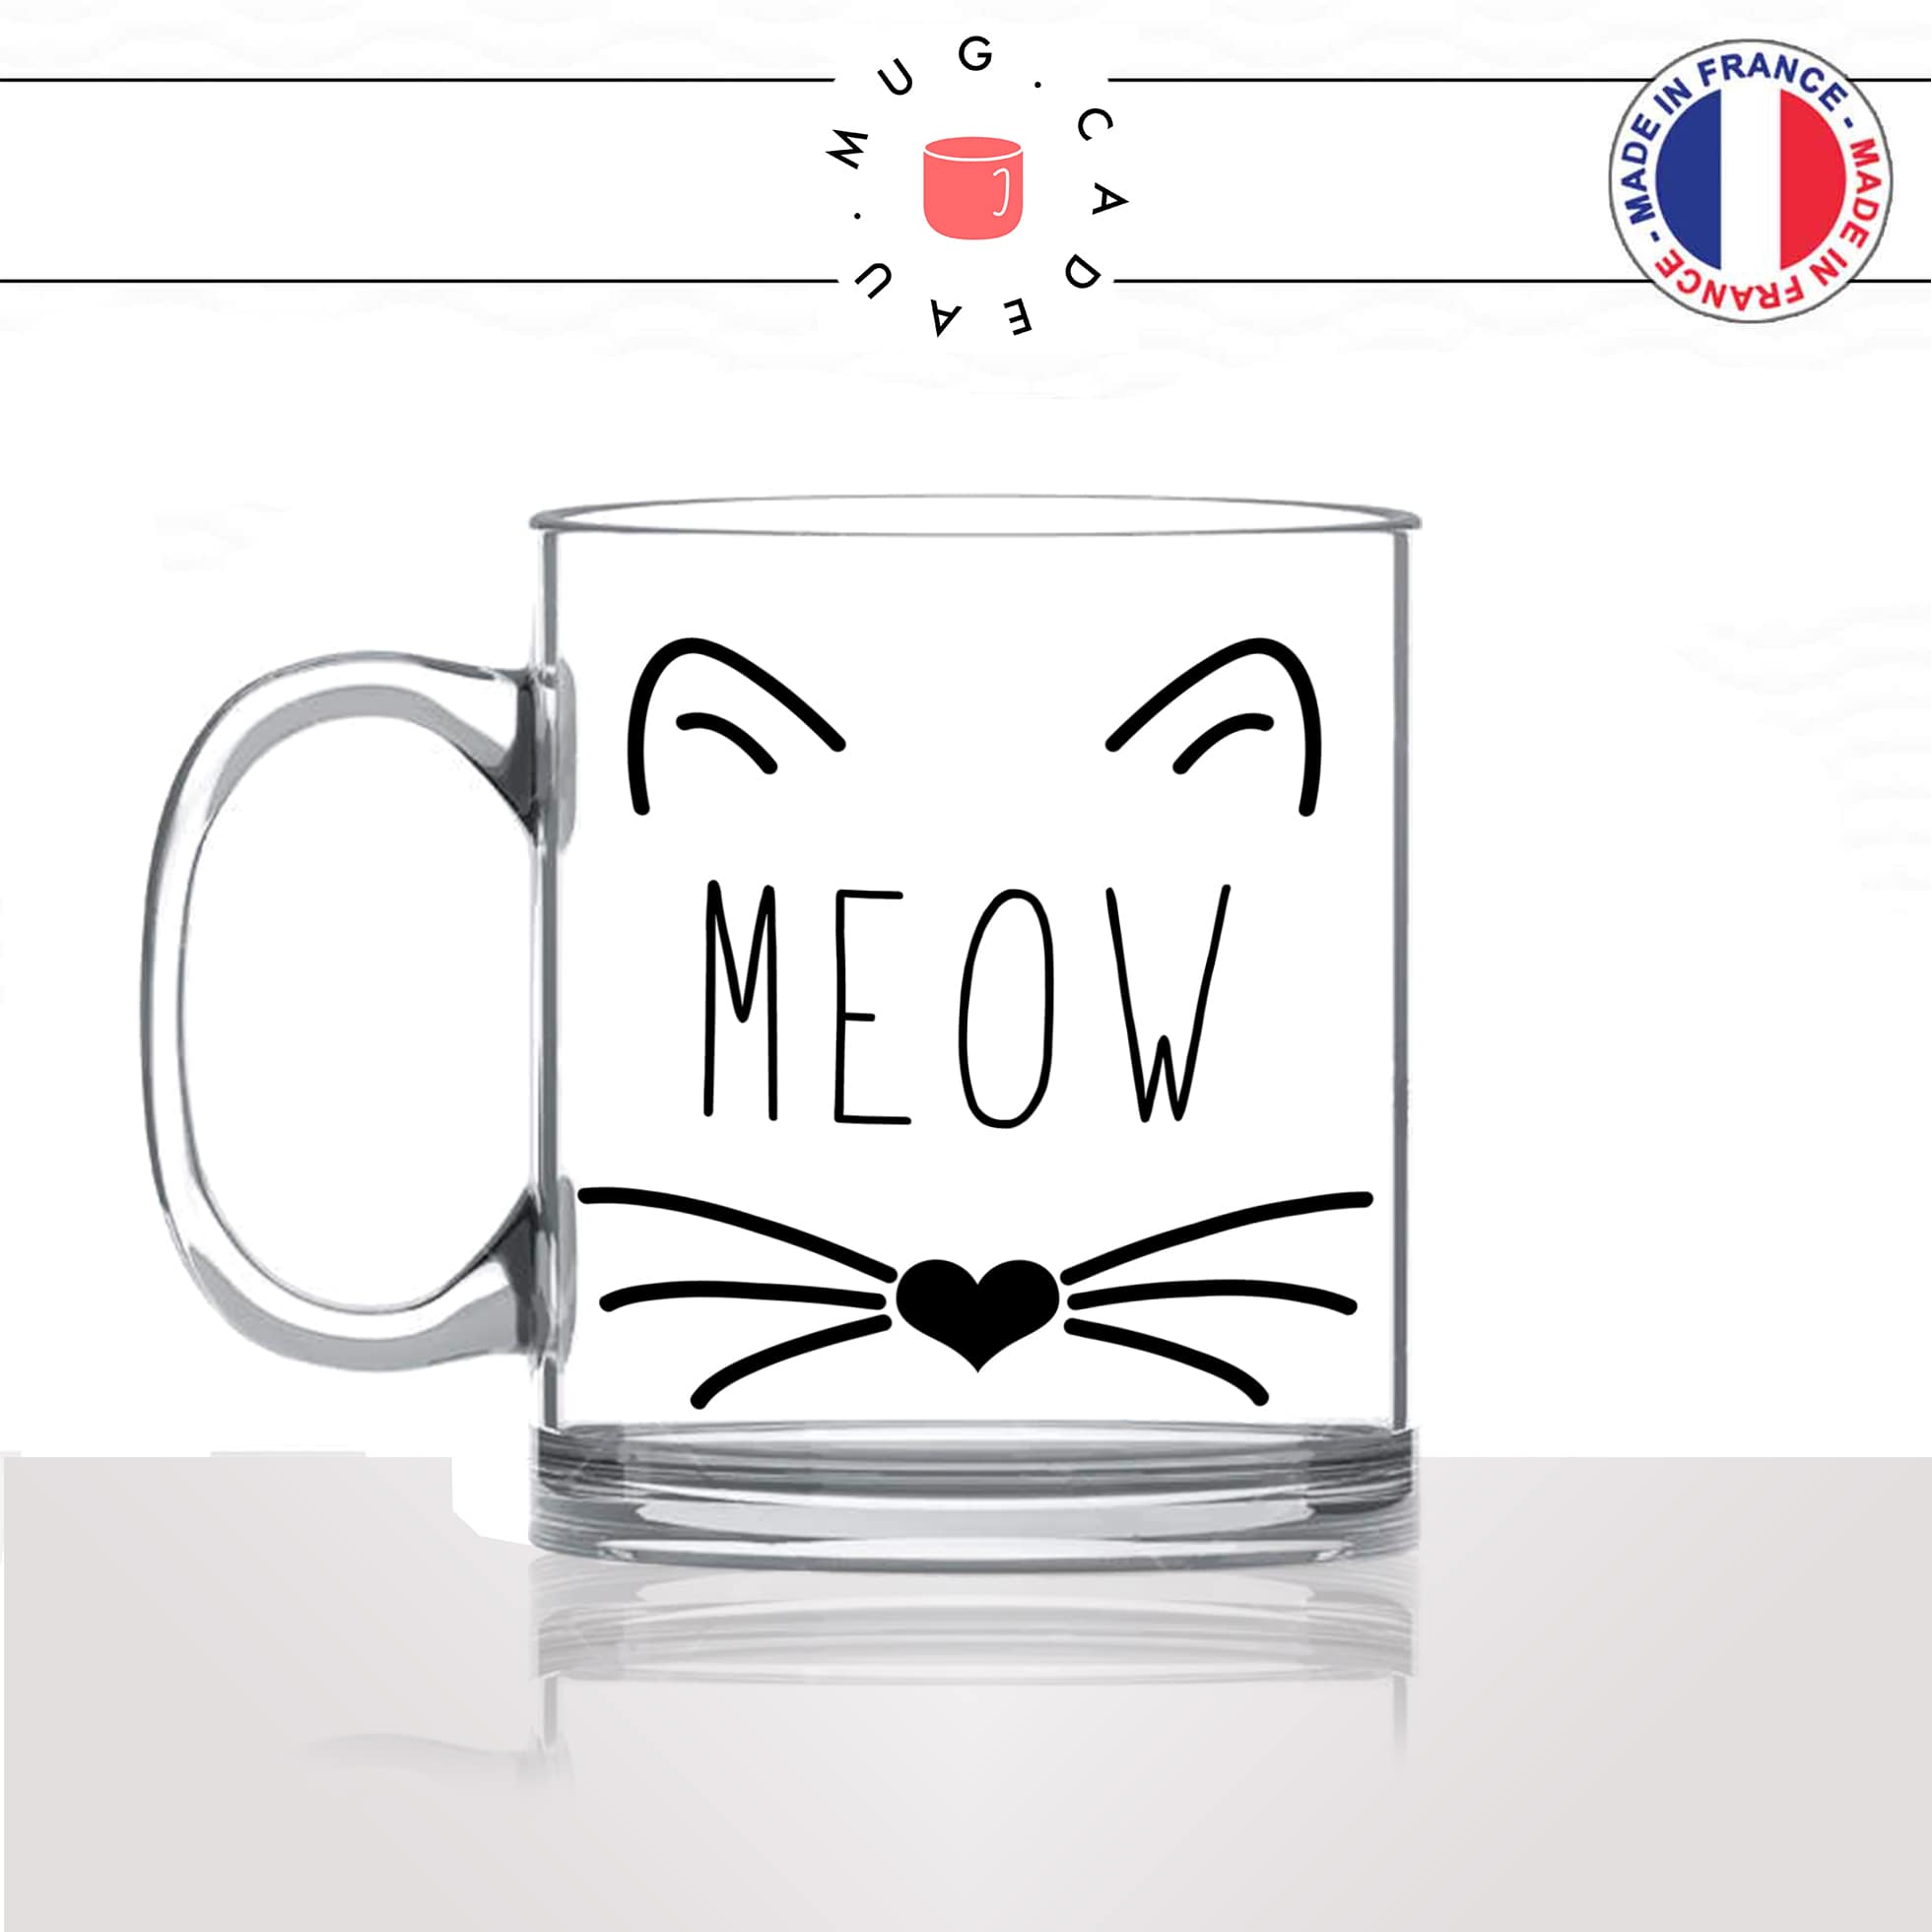 mug-tasse-en-verre-transparent-meow-miam-tete-moustache-truffe-chat-mignon-animal-chaton-noir-fun-café-thé-idée-cadeau-original-personnalisé-min